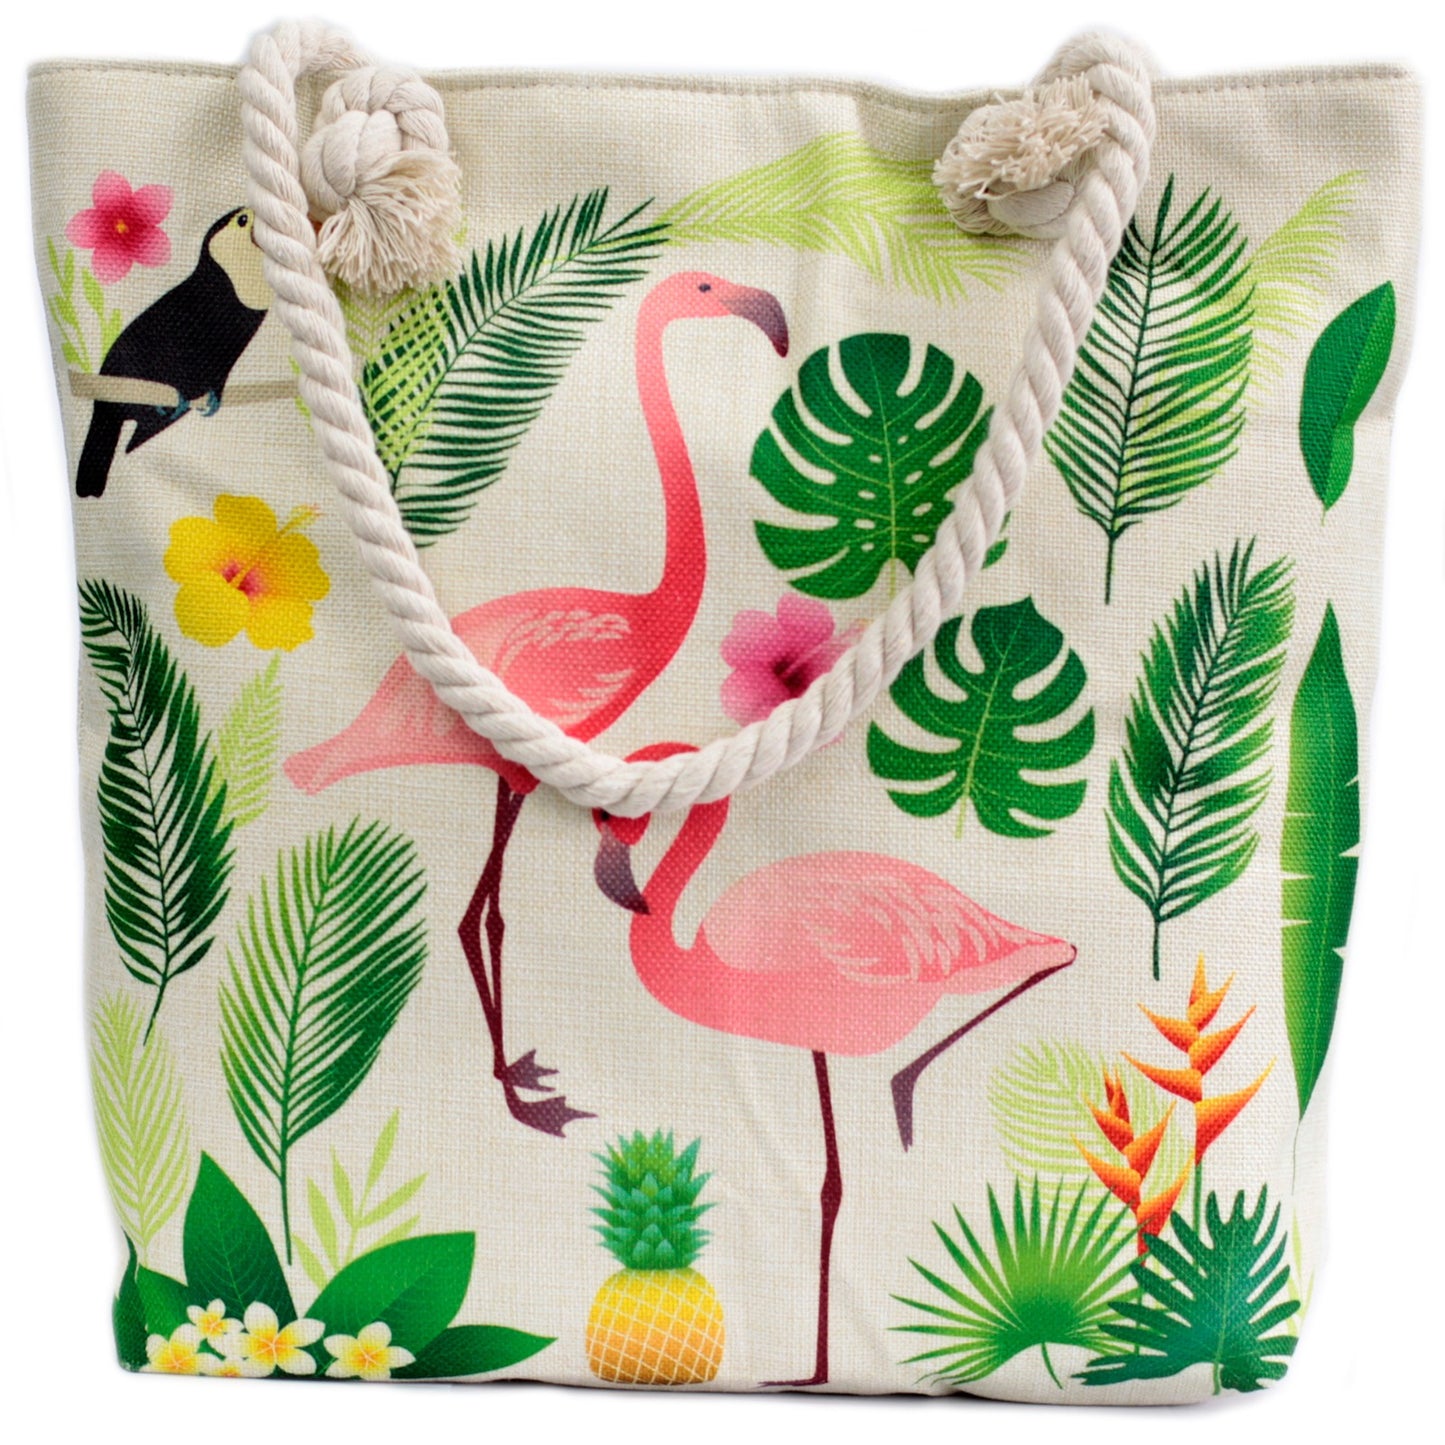 Flamingo & More Hand Bag